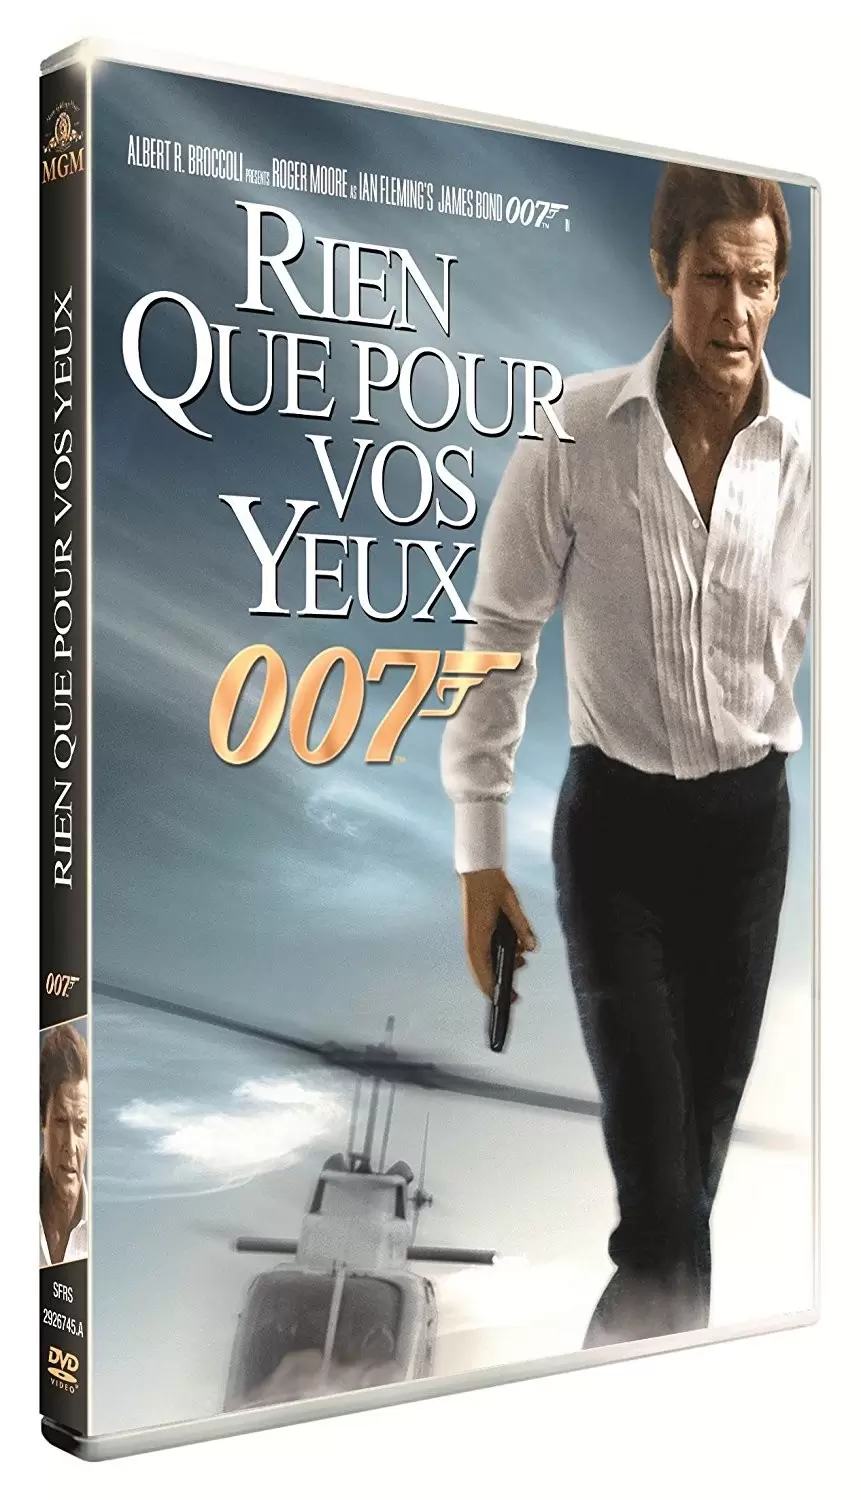 James Bond - Rien que pour vos yeux